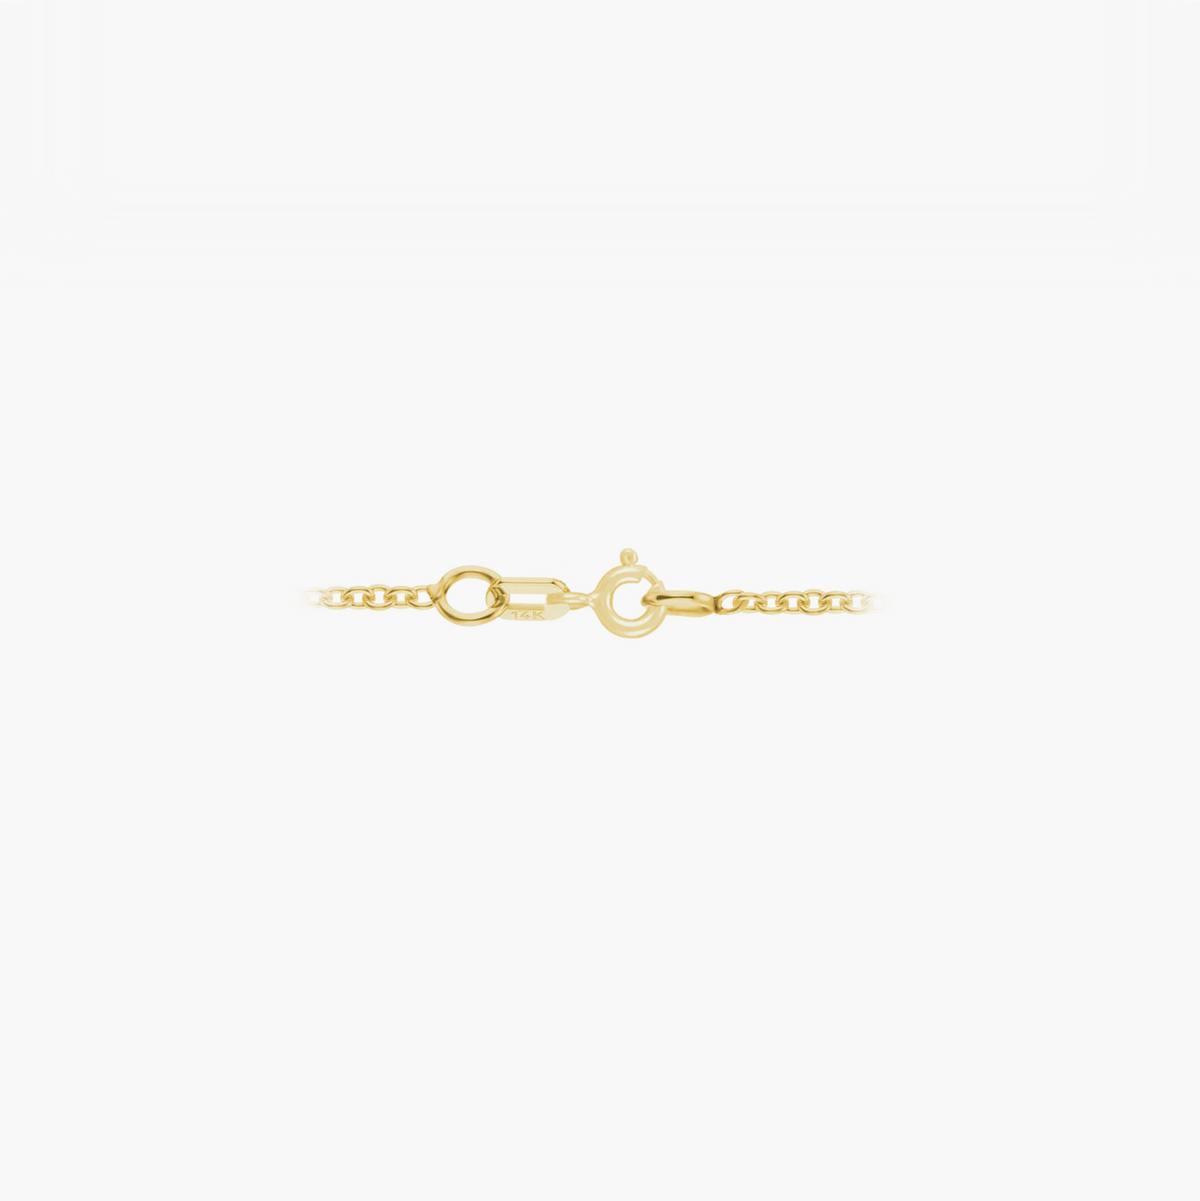 Birthday Necklace January - Garnet 14k gold necklace